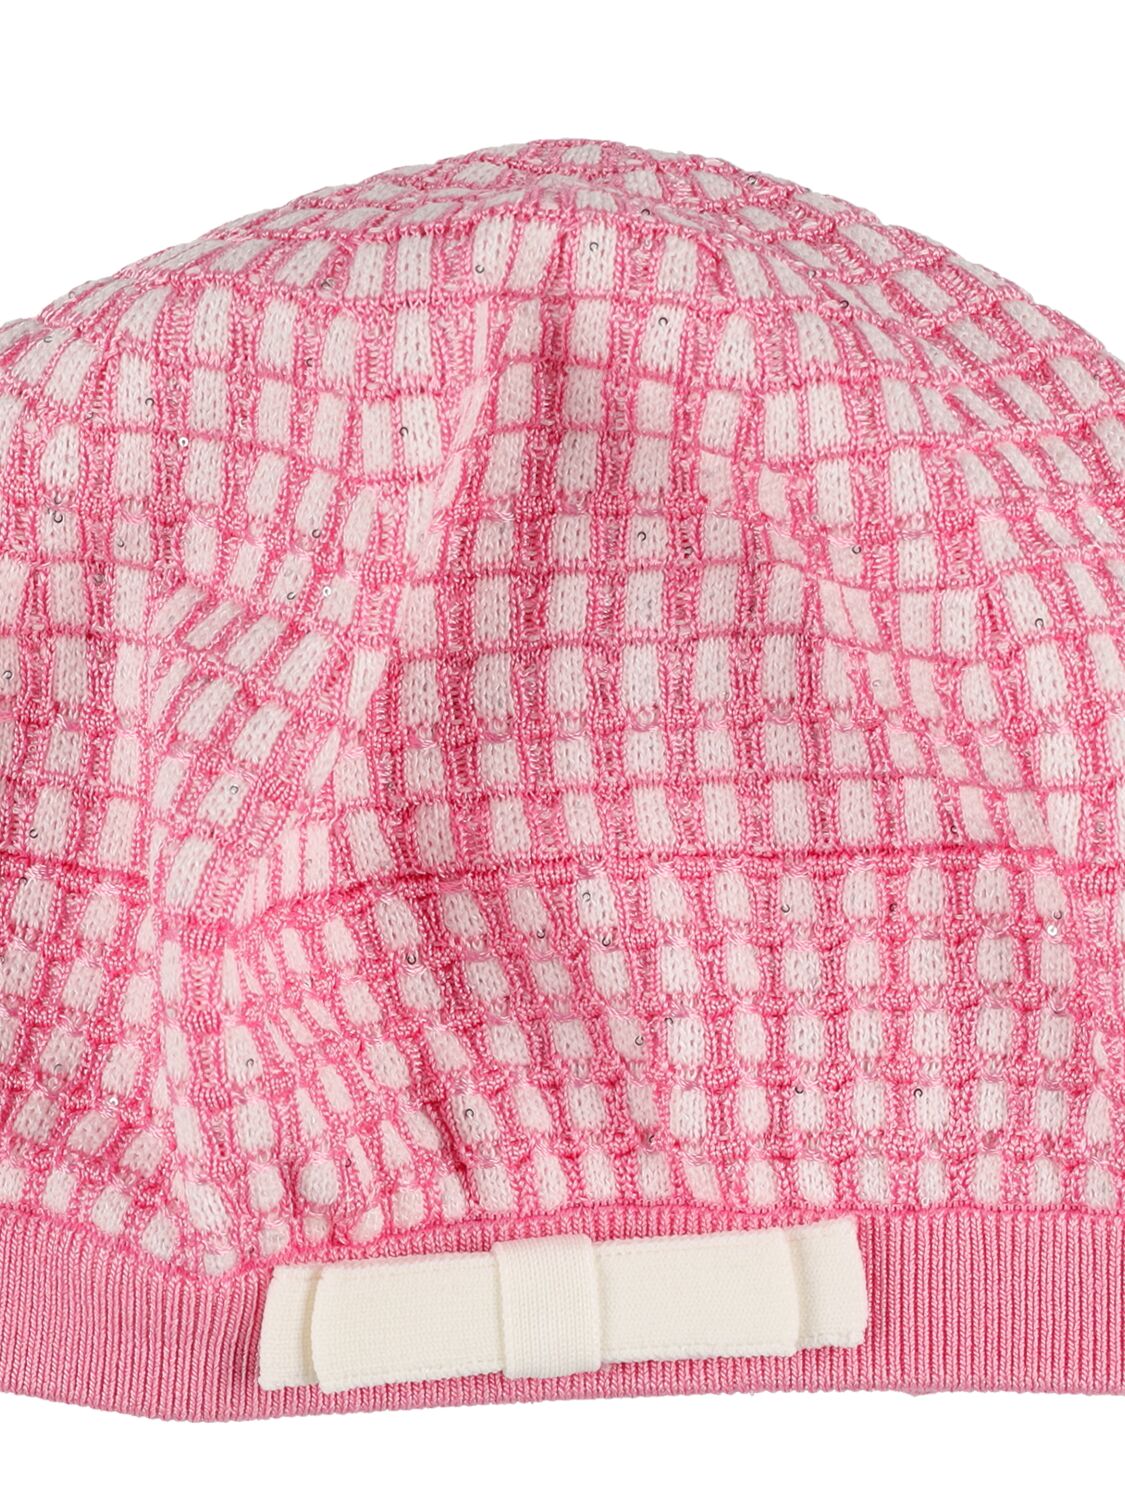 Shop Self-portrait Cotton & Wool Knit Hat In Pink,weiss